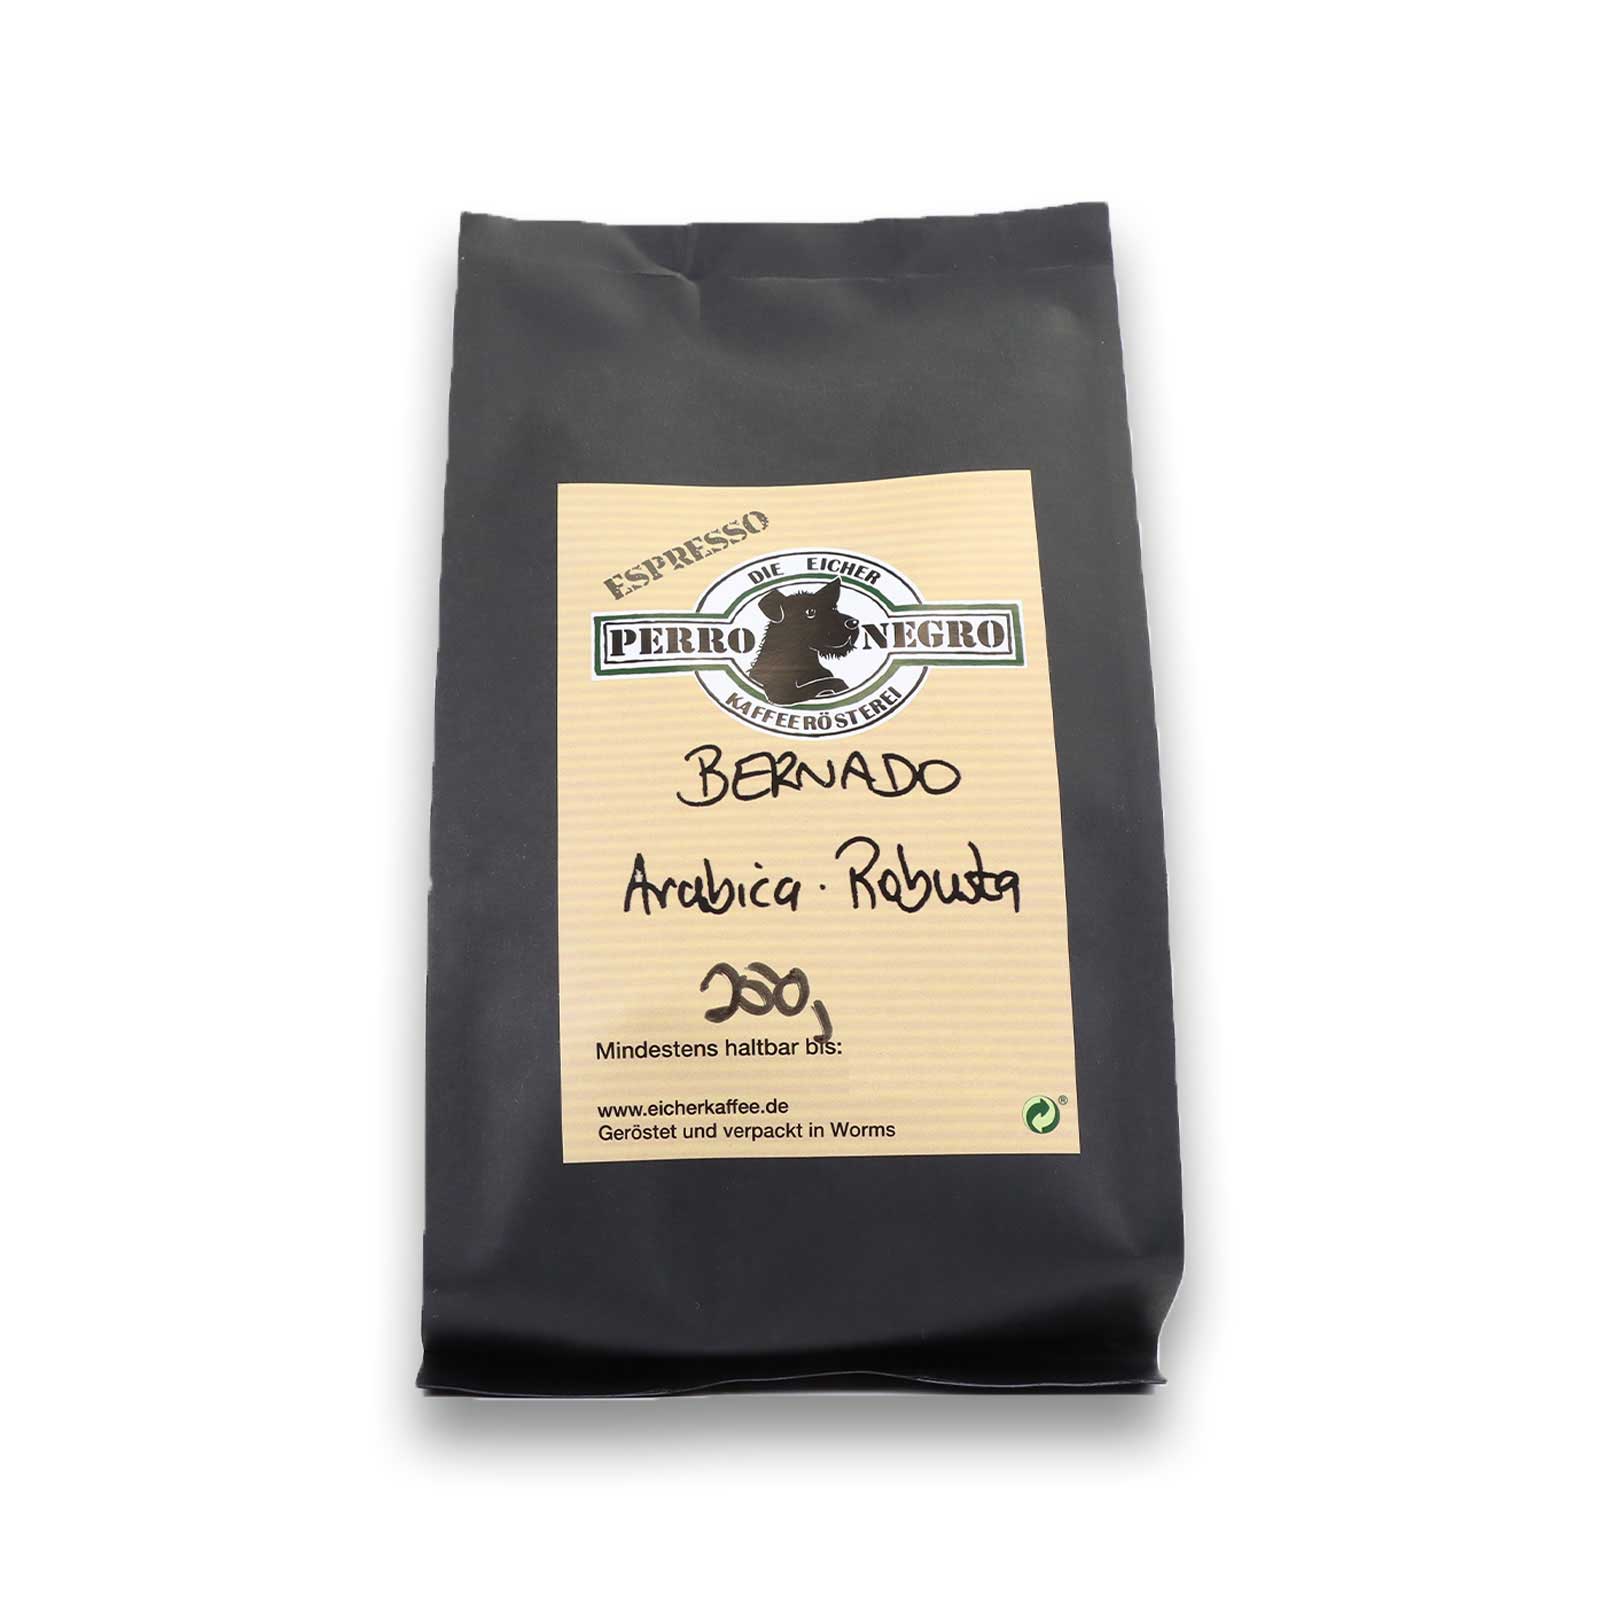 250g Bernado Arabica Robusta Kaffeebohnen der Eicher Kaffeerösterei Perro Negro.